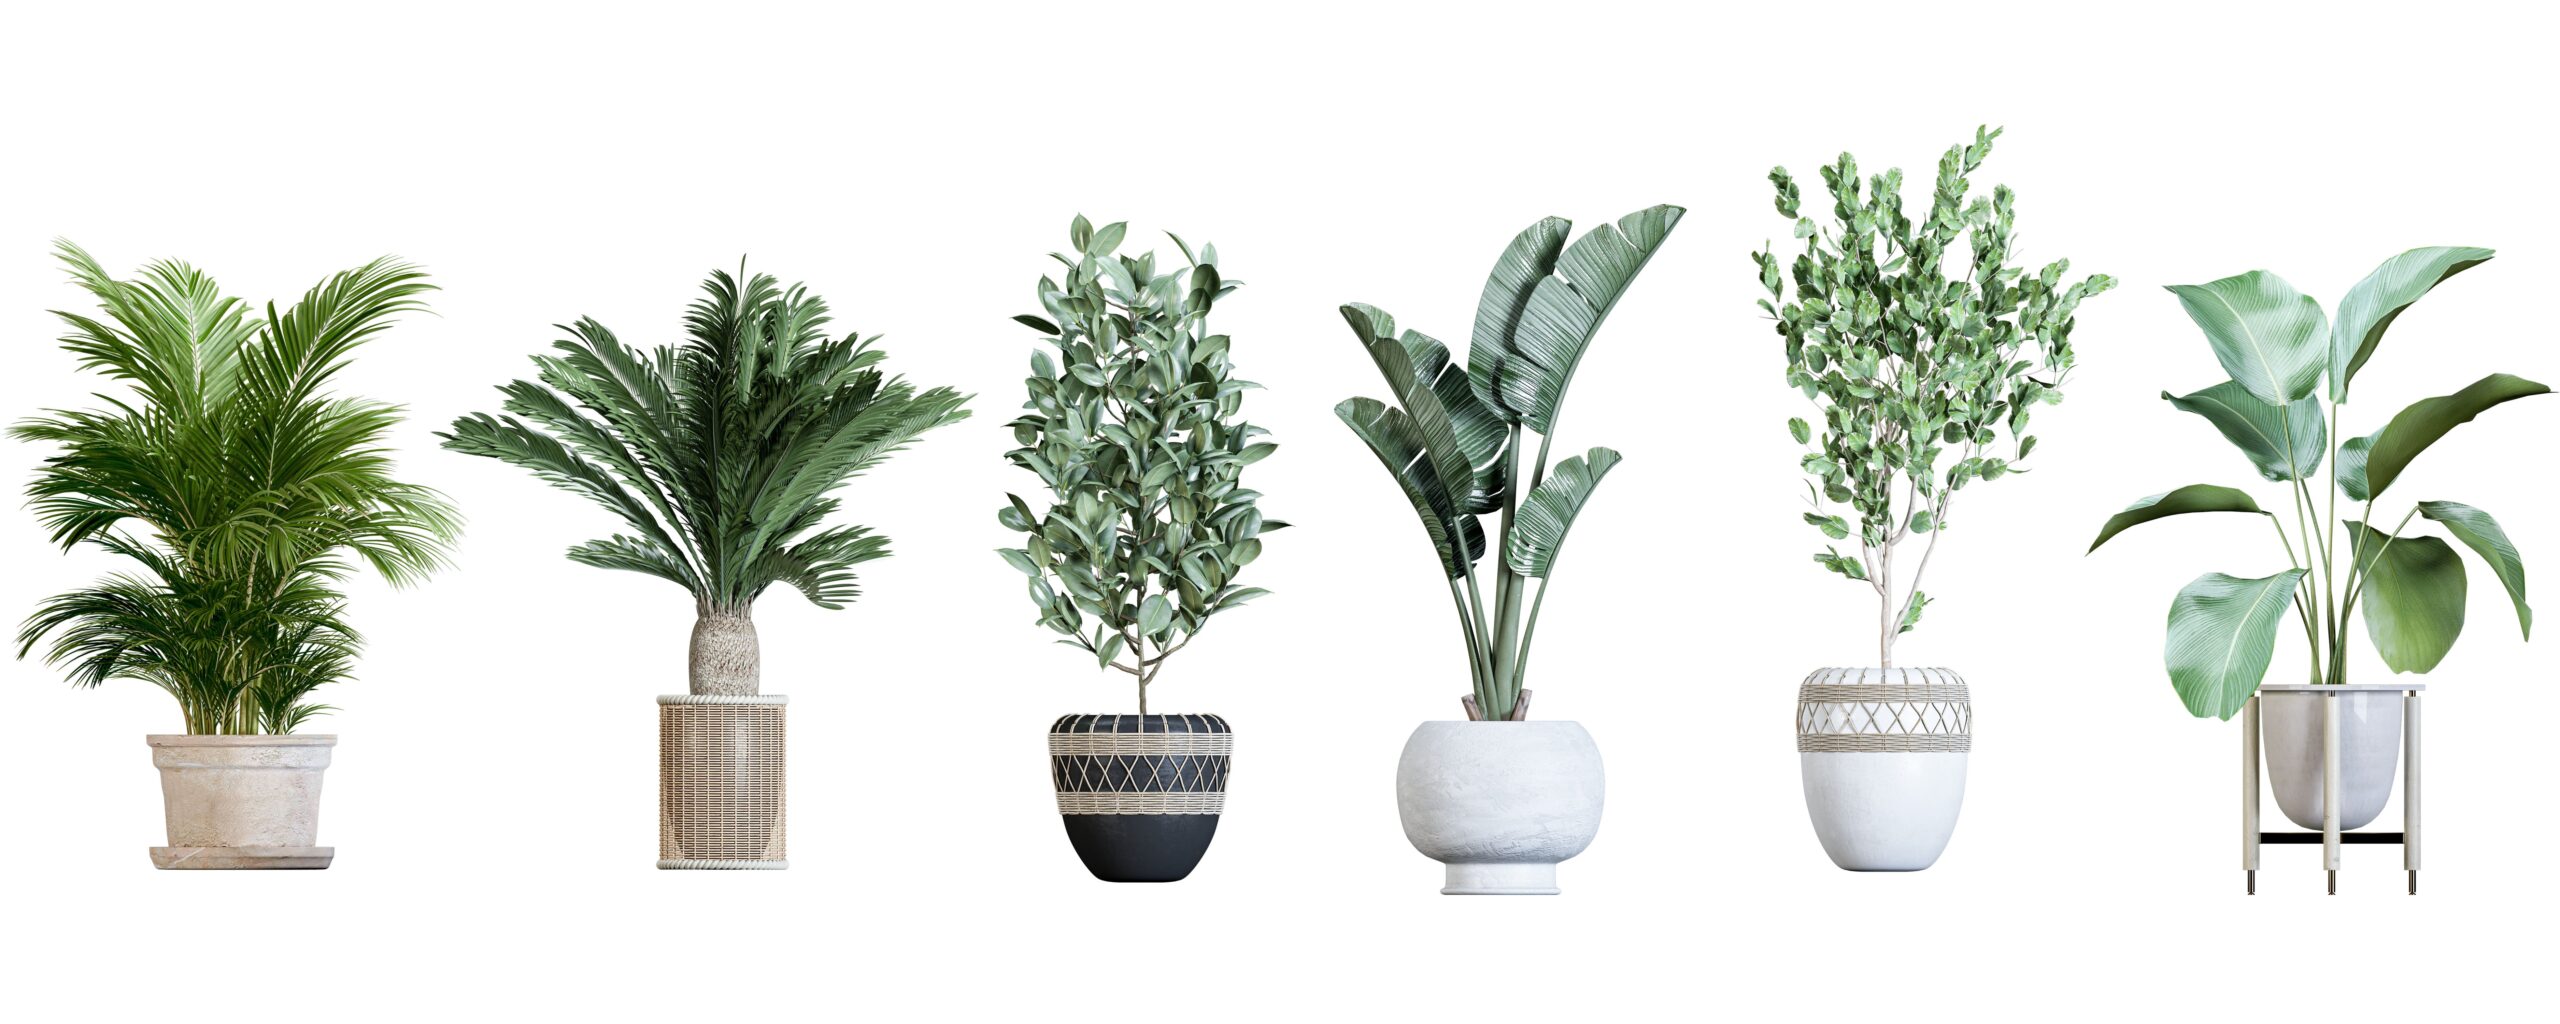 Photographie de plantes d'intérieur vertes et avec des pots différents